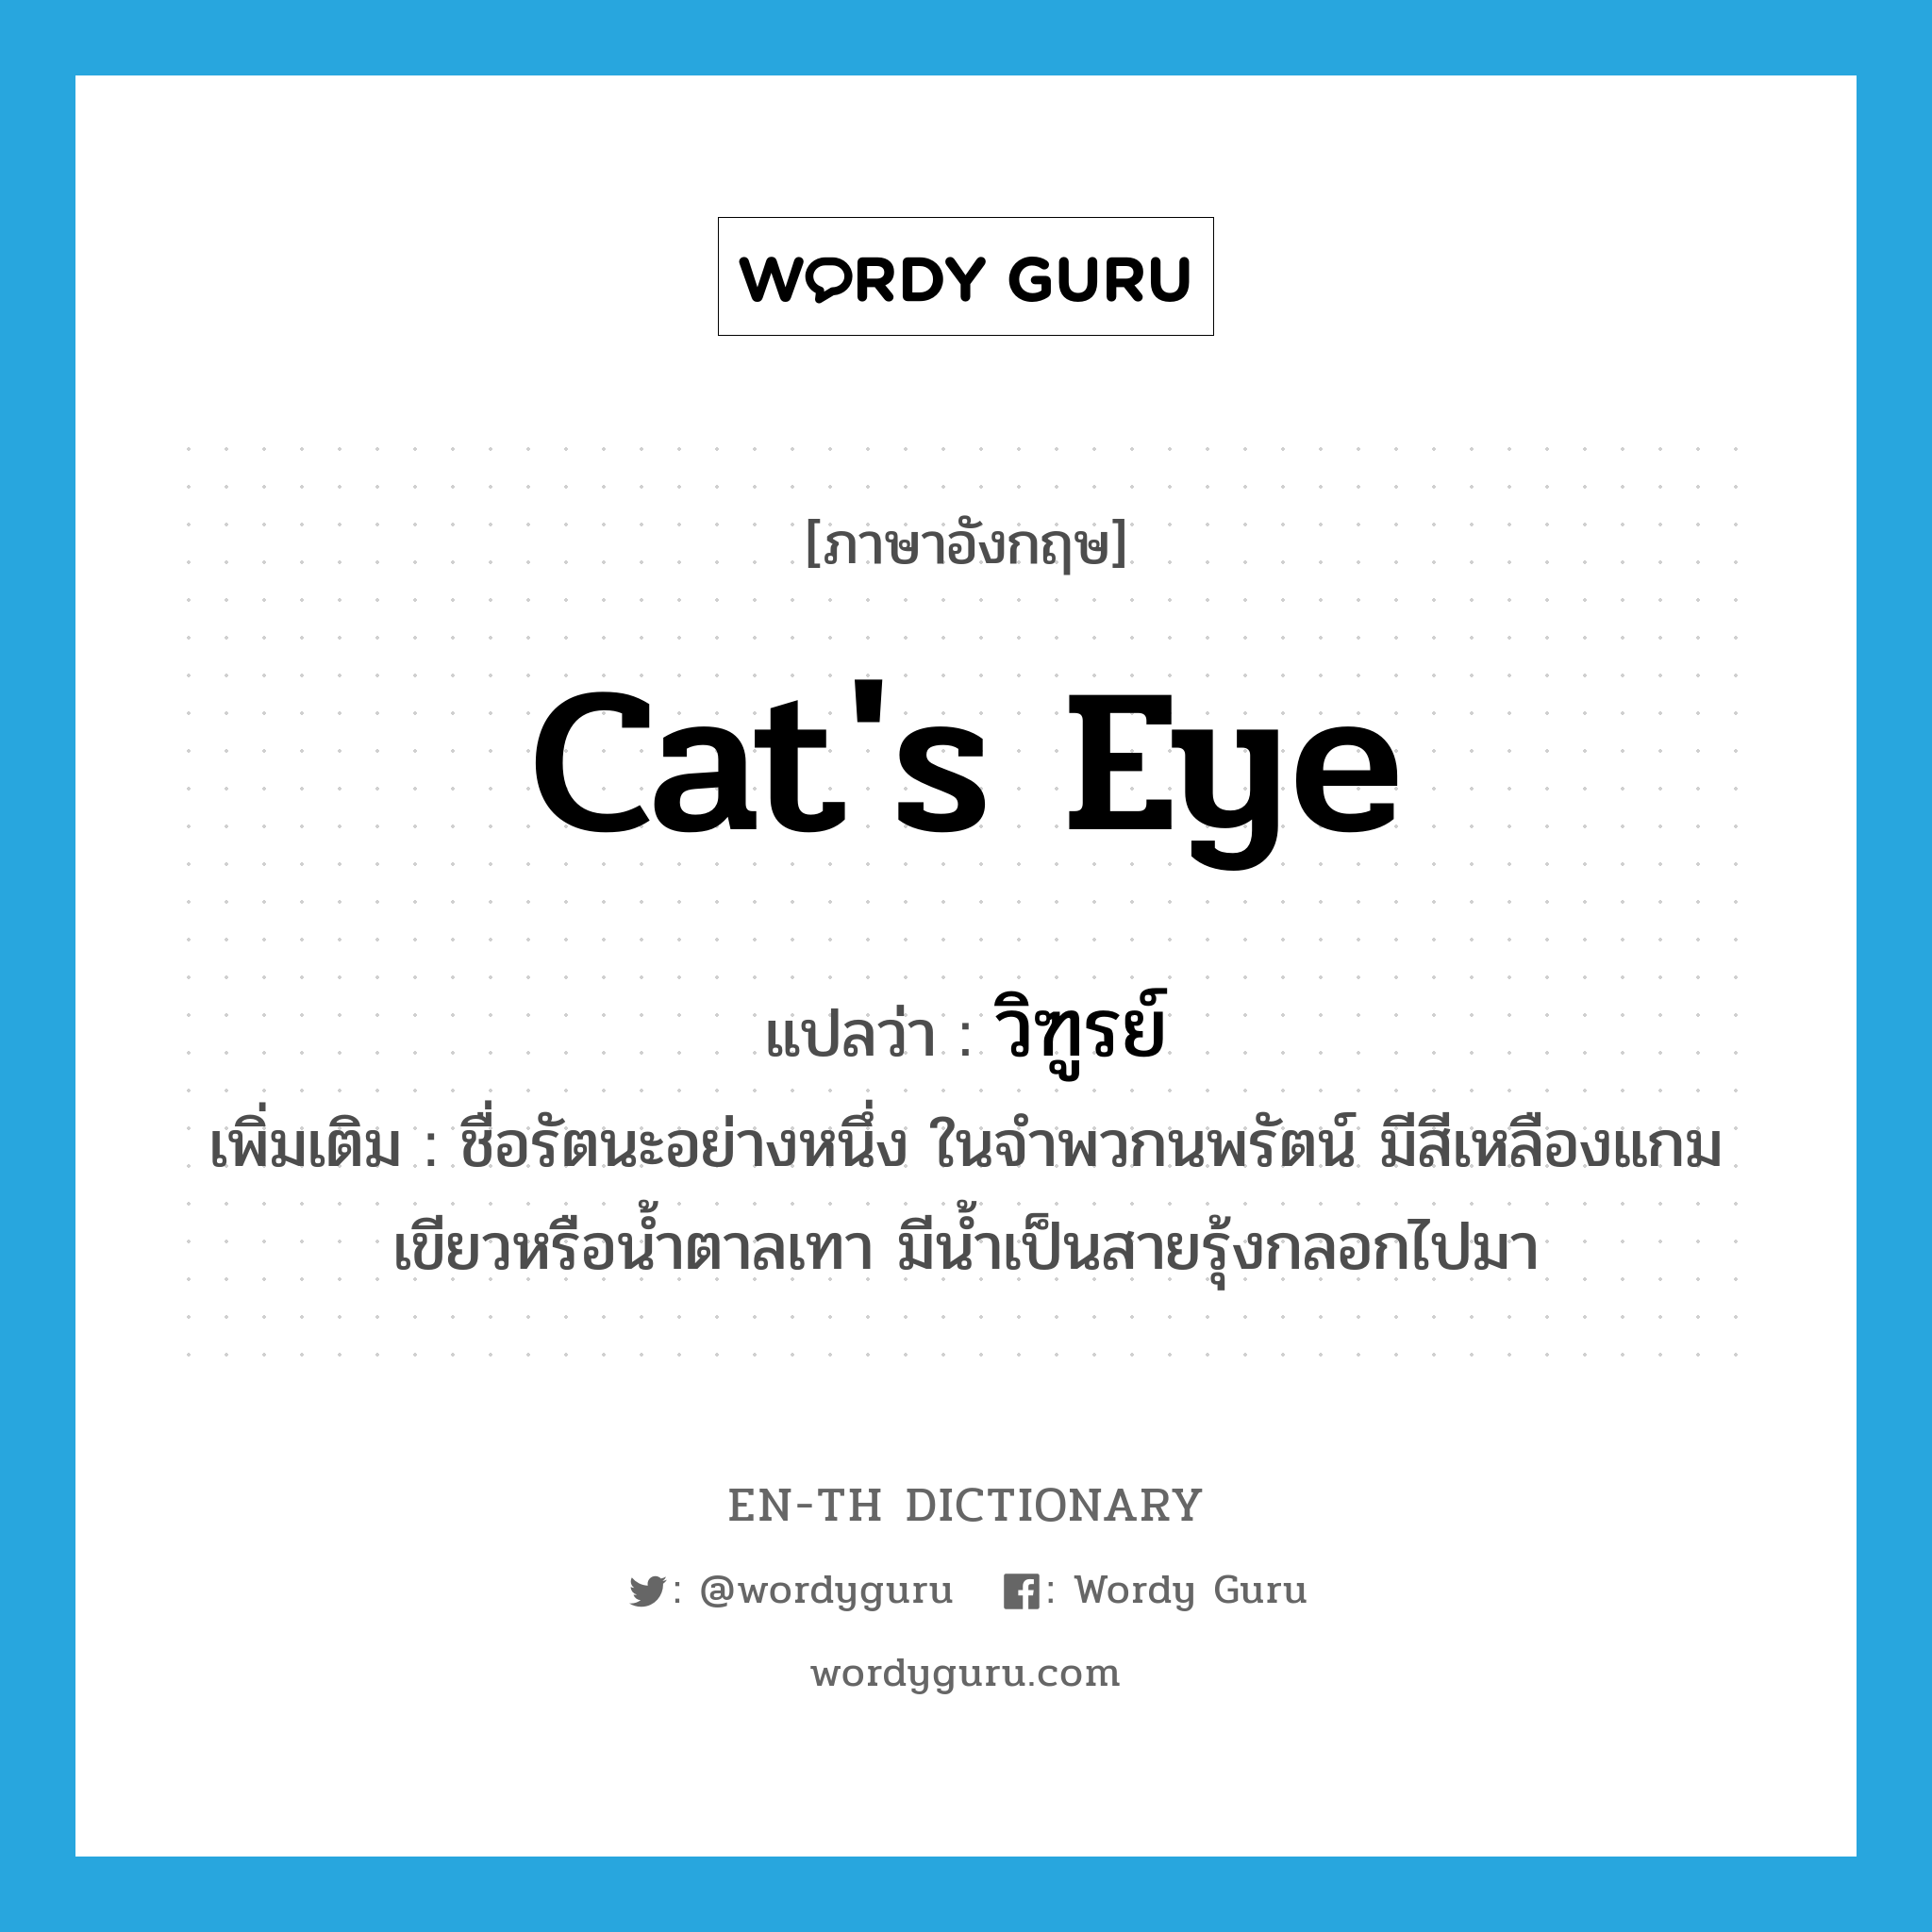 cat's eye แปลว่า?, คำศัพท์ภาษาอังกฤษ cat's eye แปลว่า วิฑูรย์ ประเภท N เพิ่มเติม ชื่อรัตนะอย่างหนึ่ง ในจำพวกนพรัตน์ มีสีเหลืองแกมเขียวหรือน้ำตาลเทา มีน้ำเป็นสายรุ้งกลอกไปมา หมวด N